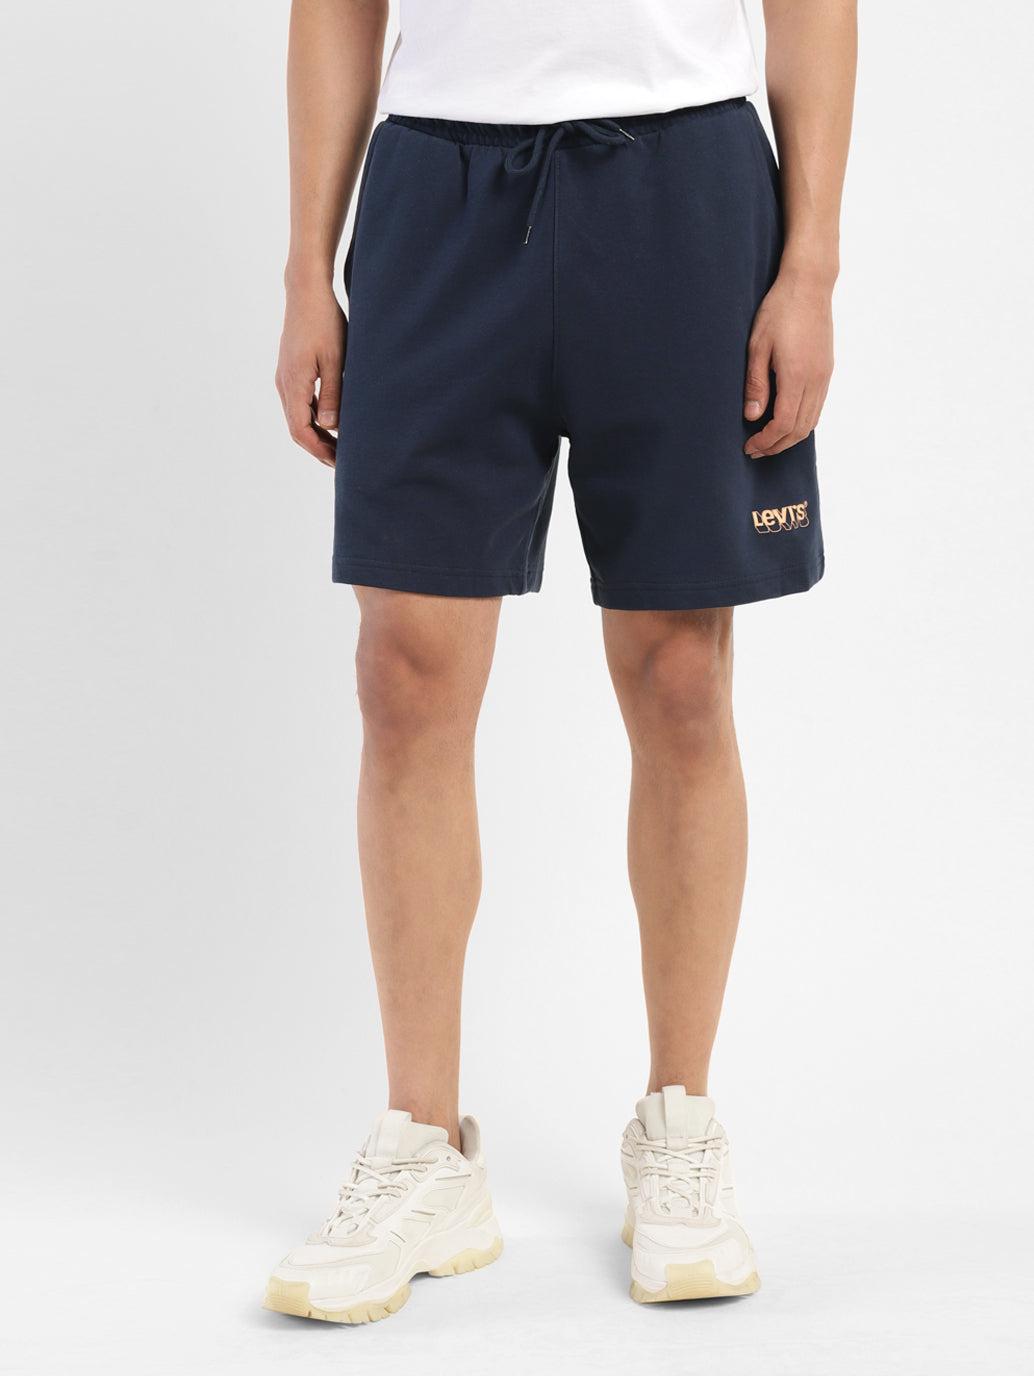 men's navy regular fit shorts